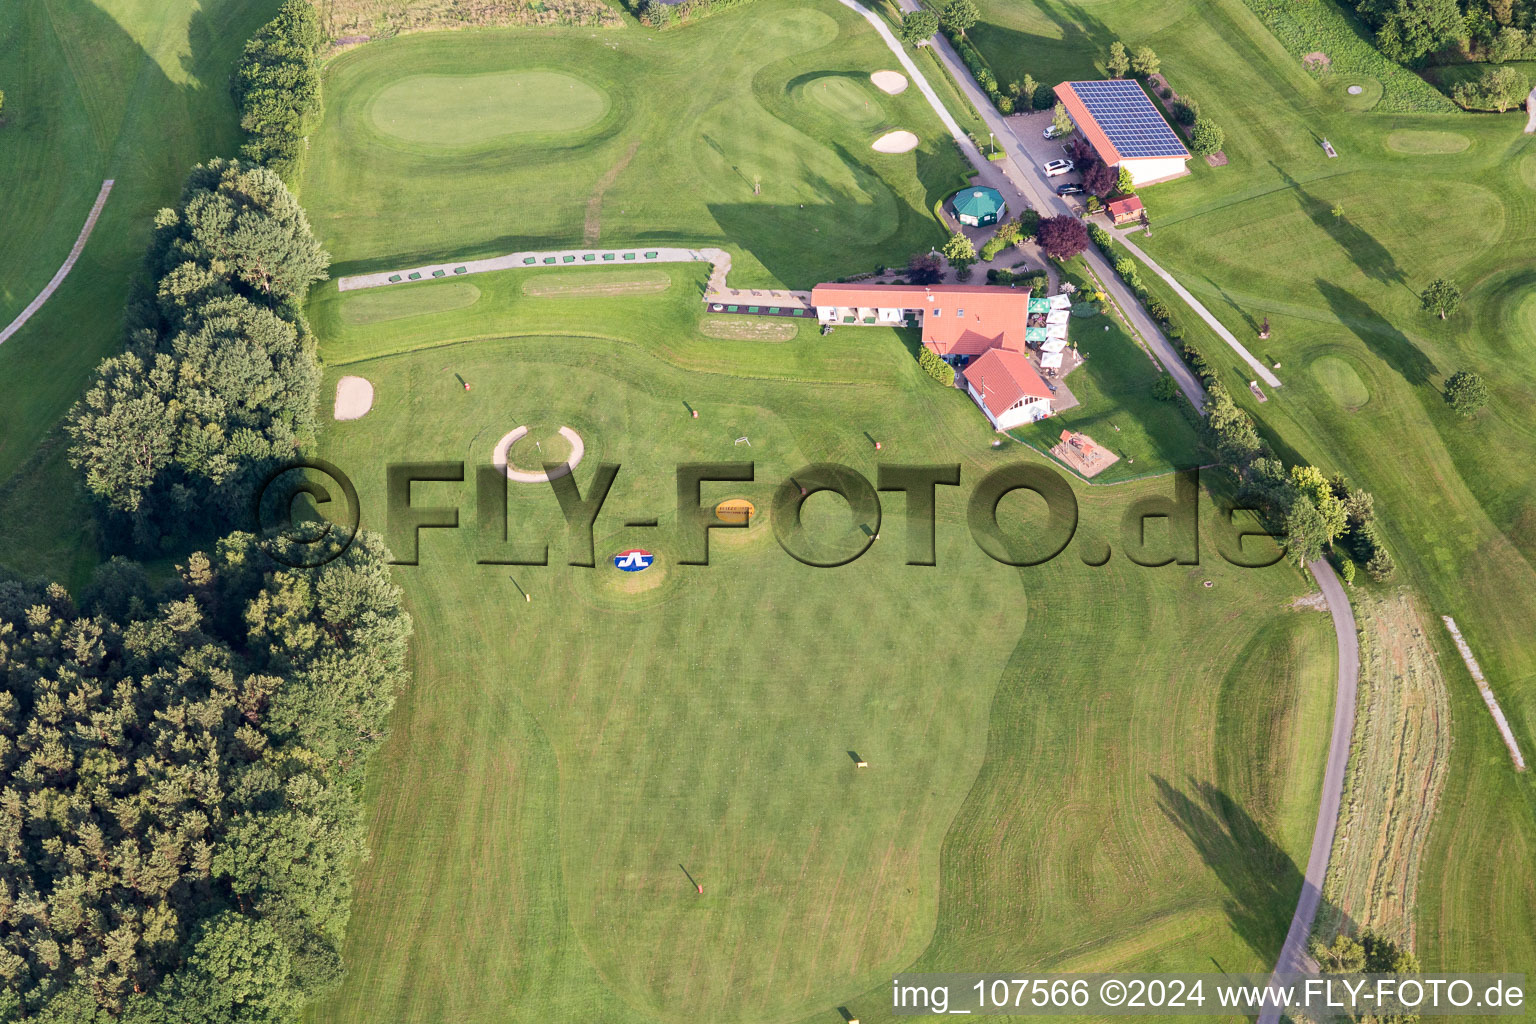 Vue aérienne de Club de golf de Muda à Mudau dans le département Bade-Wurtemberg, Allemagne